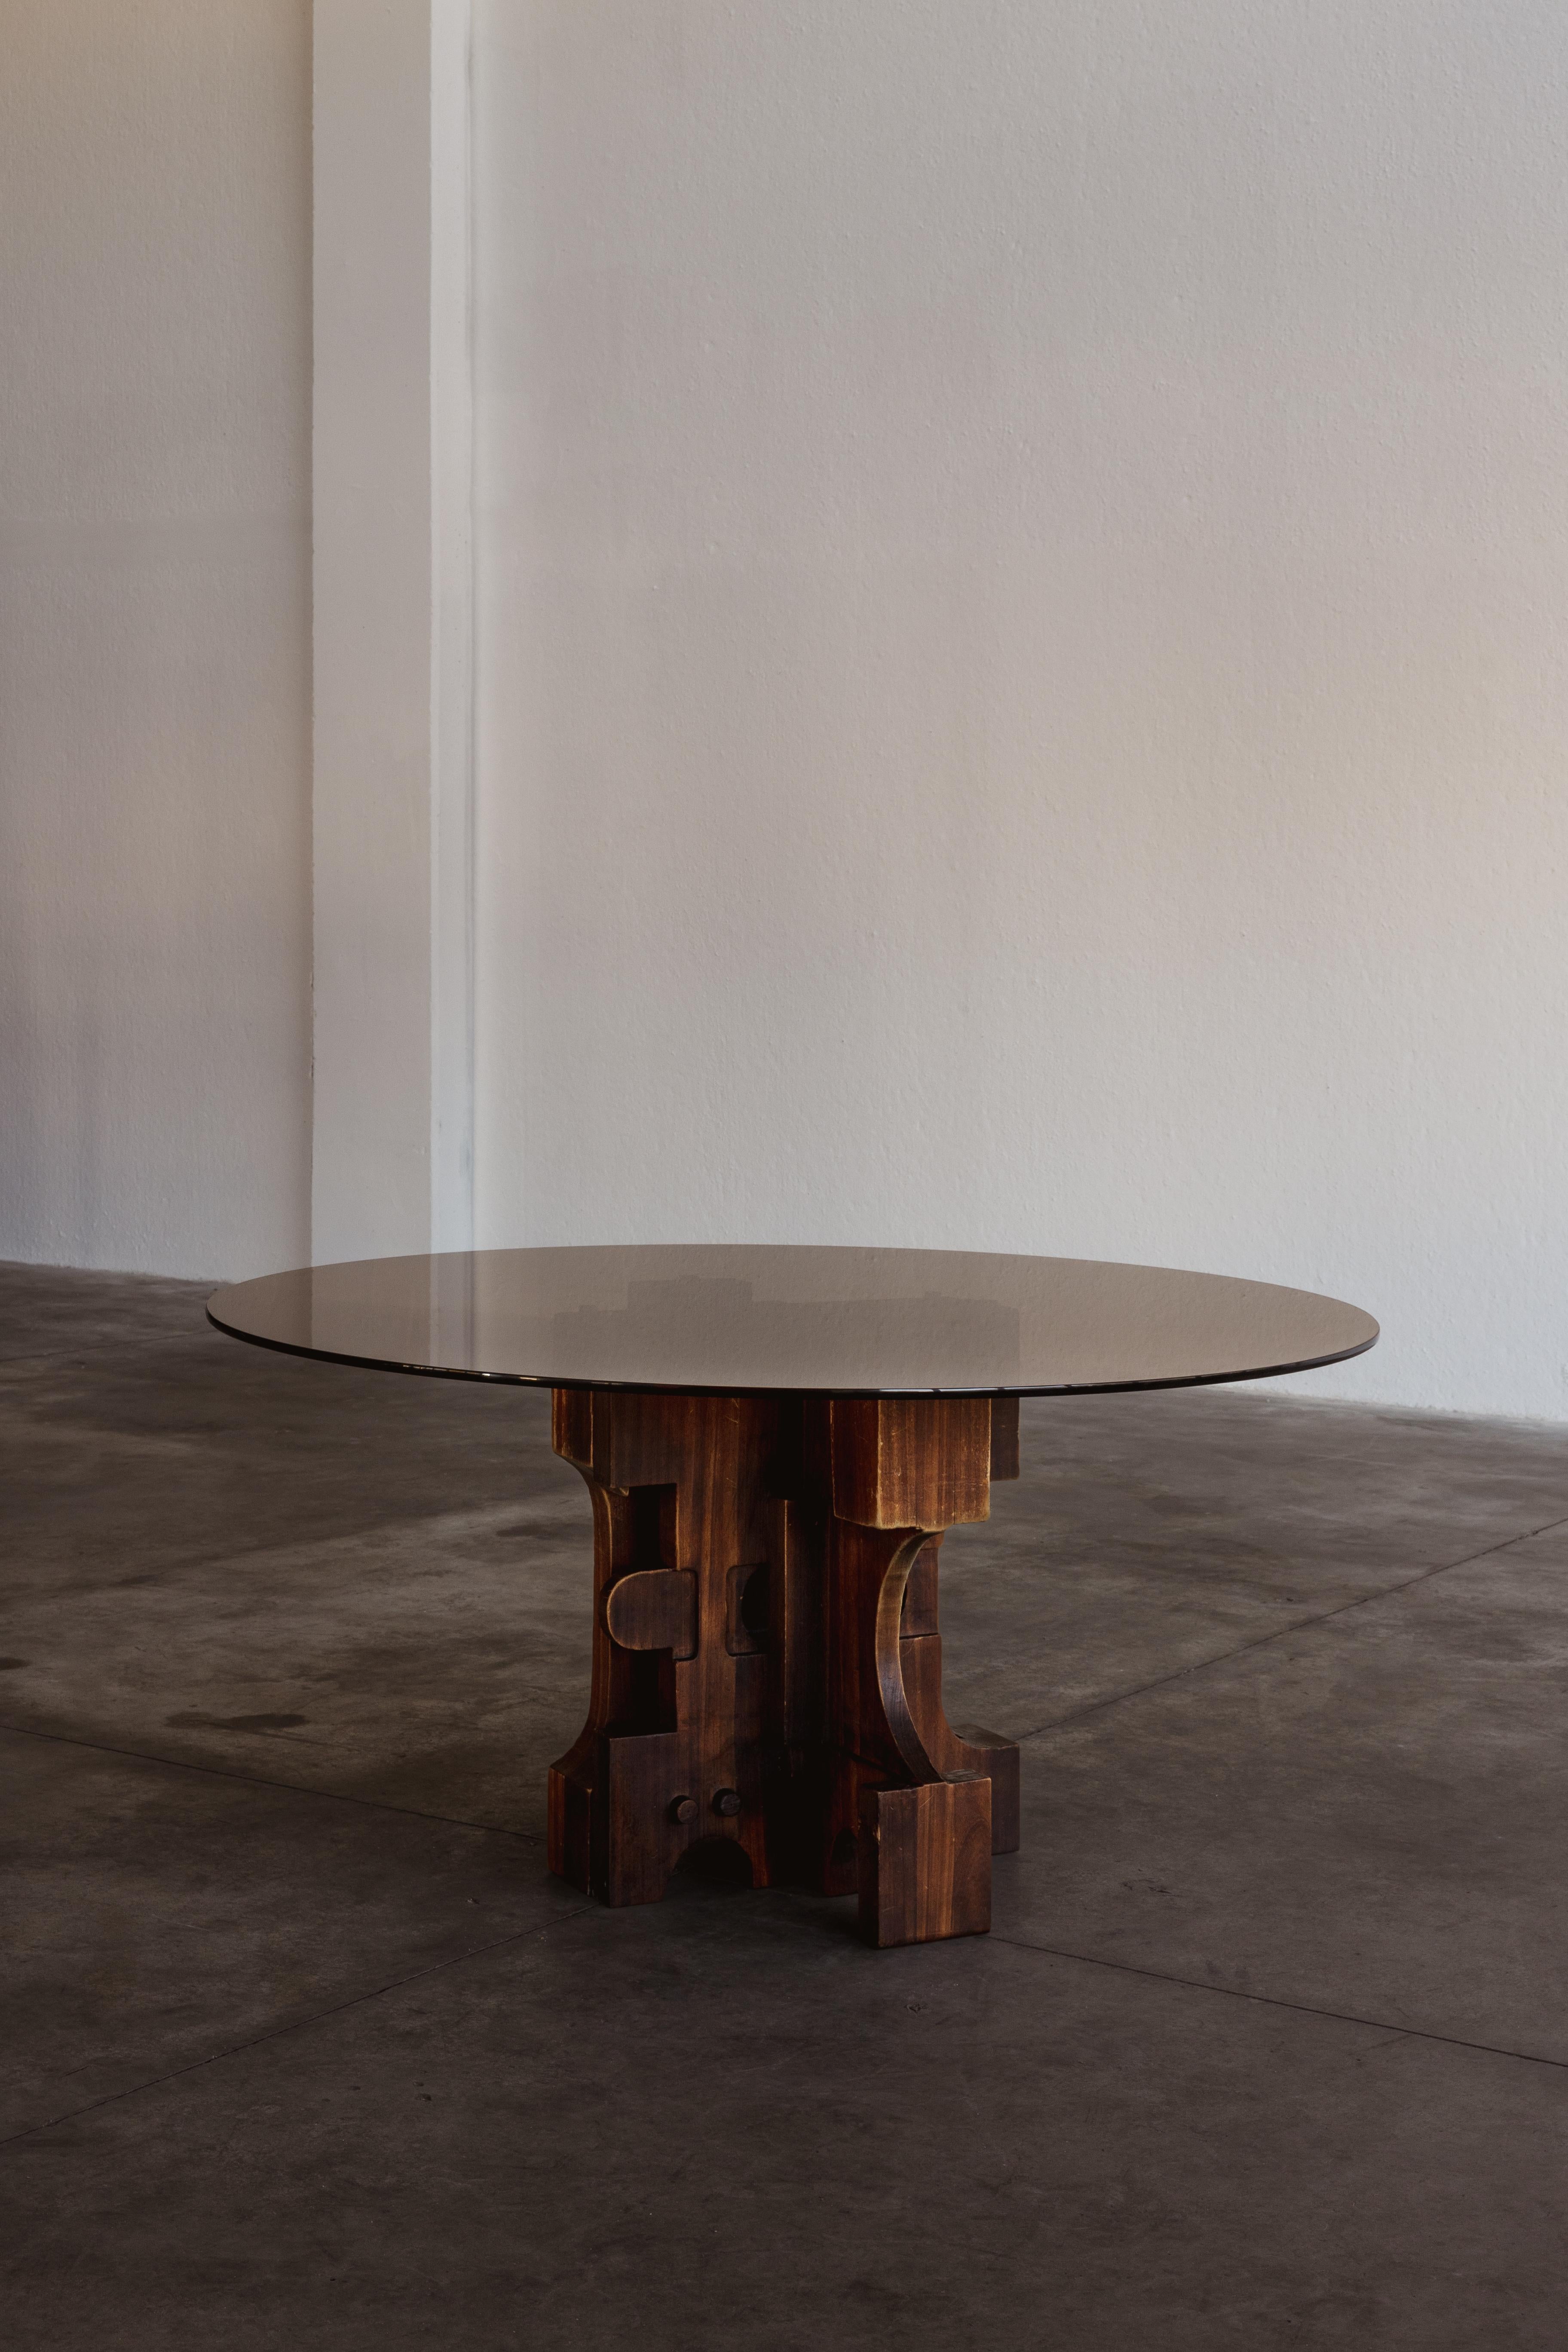 Table de salle à manger Nerone & Patuzzi pour Gruppo NP2, verre, fer et bois, Italie, années 1970.

Conçue par le duo italien Nerone et Patuzzi, cette table de salle à manger est une œuvre d'art. La base est constituée d'une disposition asymétrique